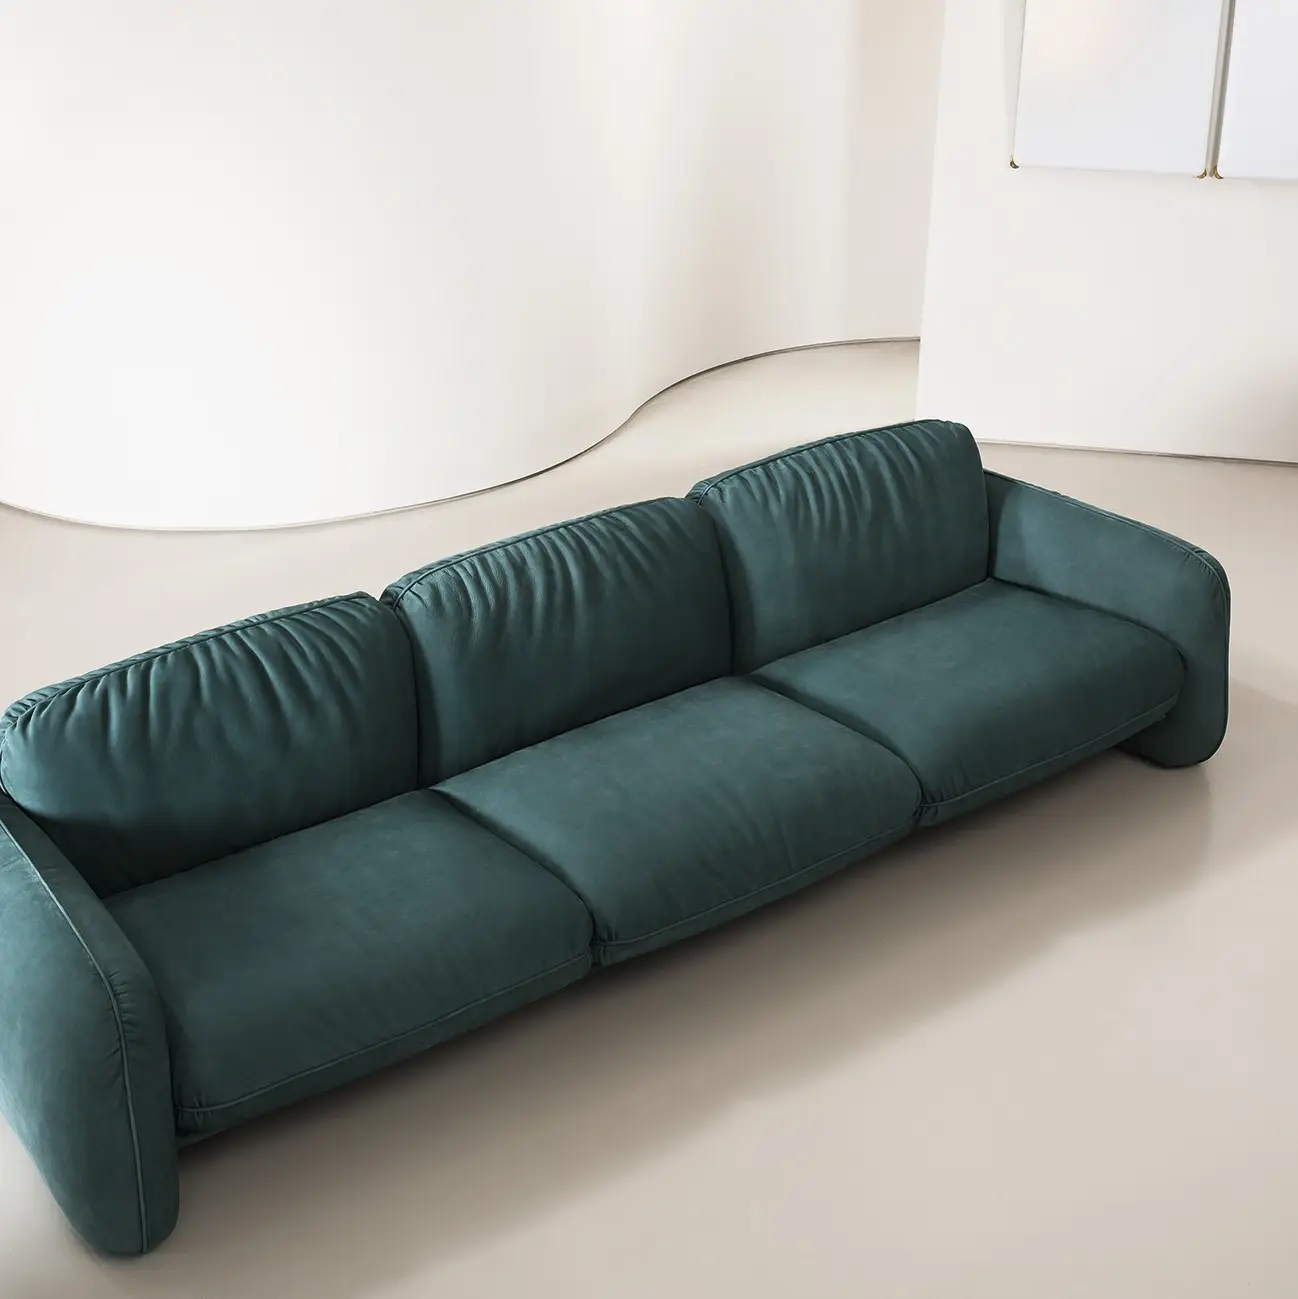 Диваны для гостиной диваны современный итальянский дизайн диван набор Нефритового цвета минималистский стиль наборы для диванов